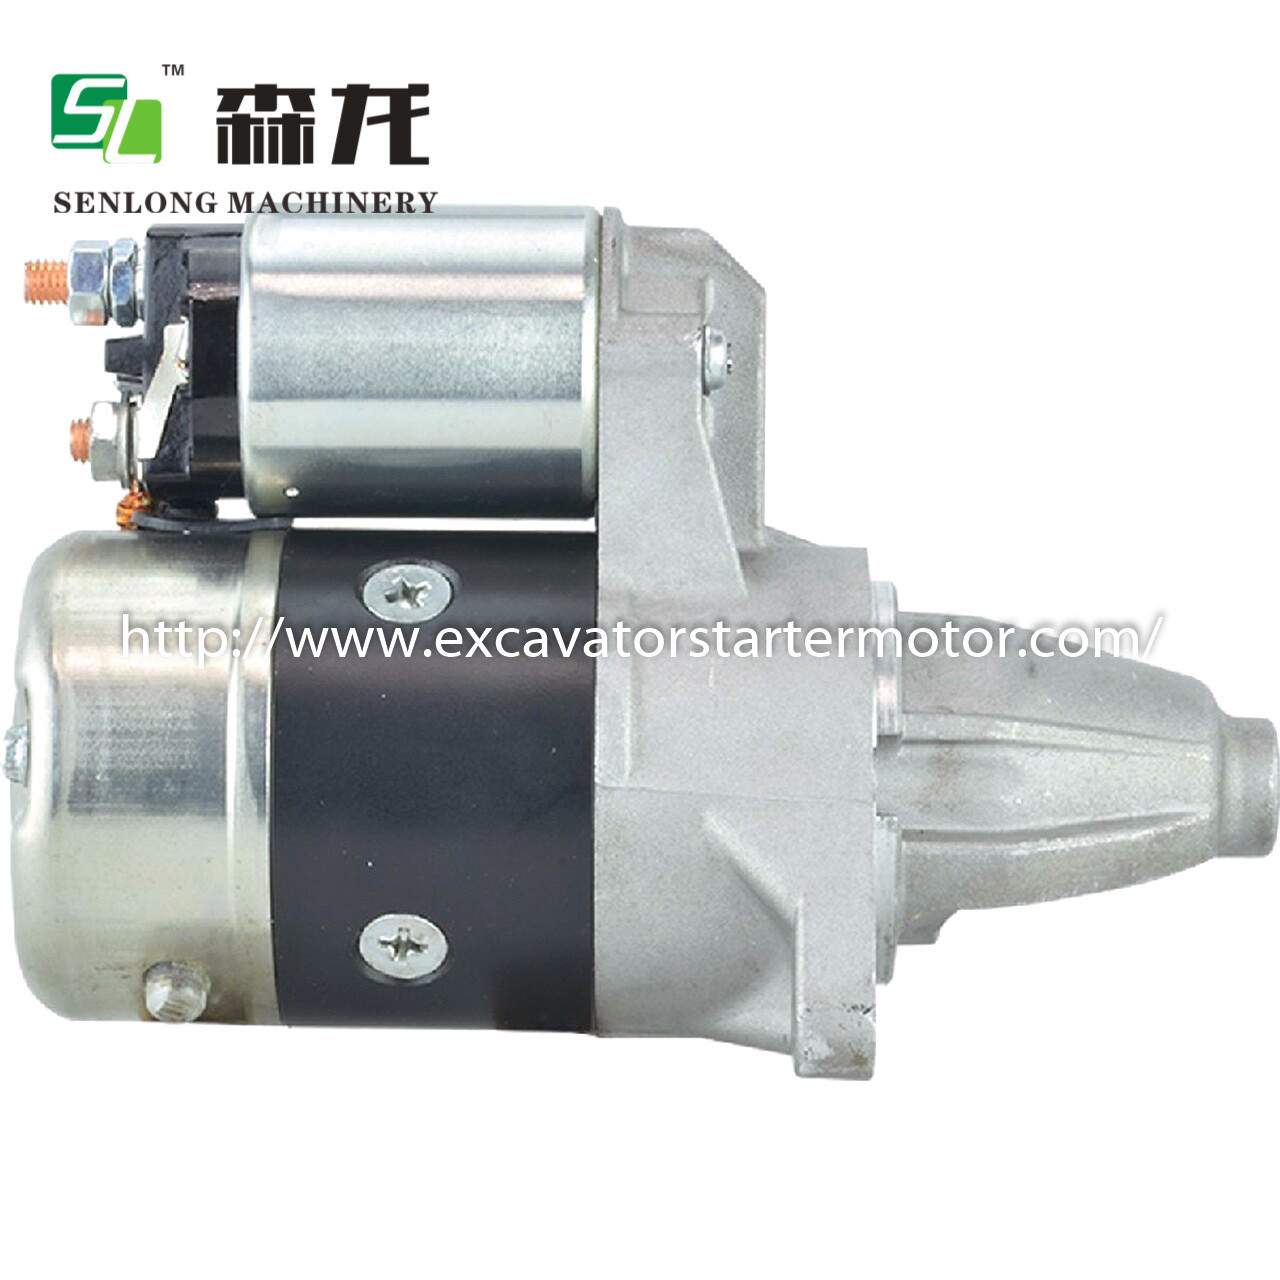 M2T49581 Engine Starter Motor For Industrial Starter For Cushman Truckster M2T13181 410-48307 180515082